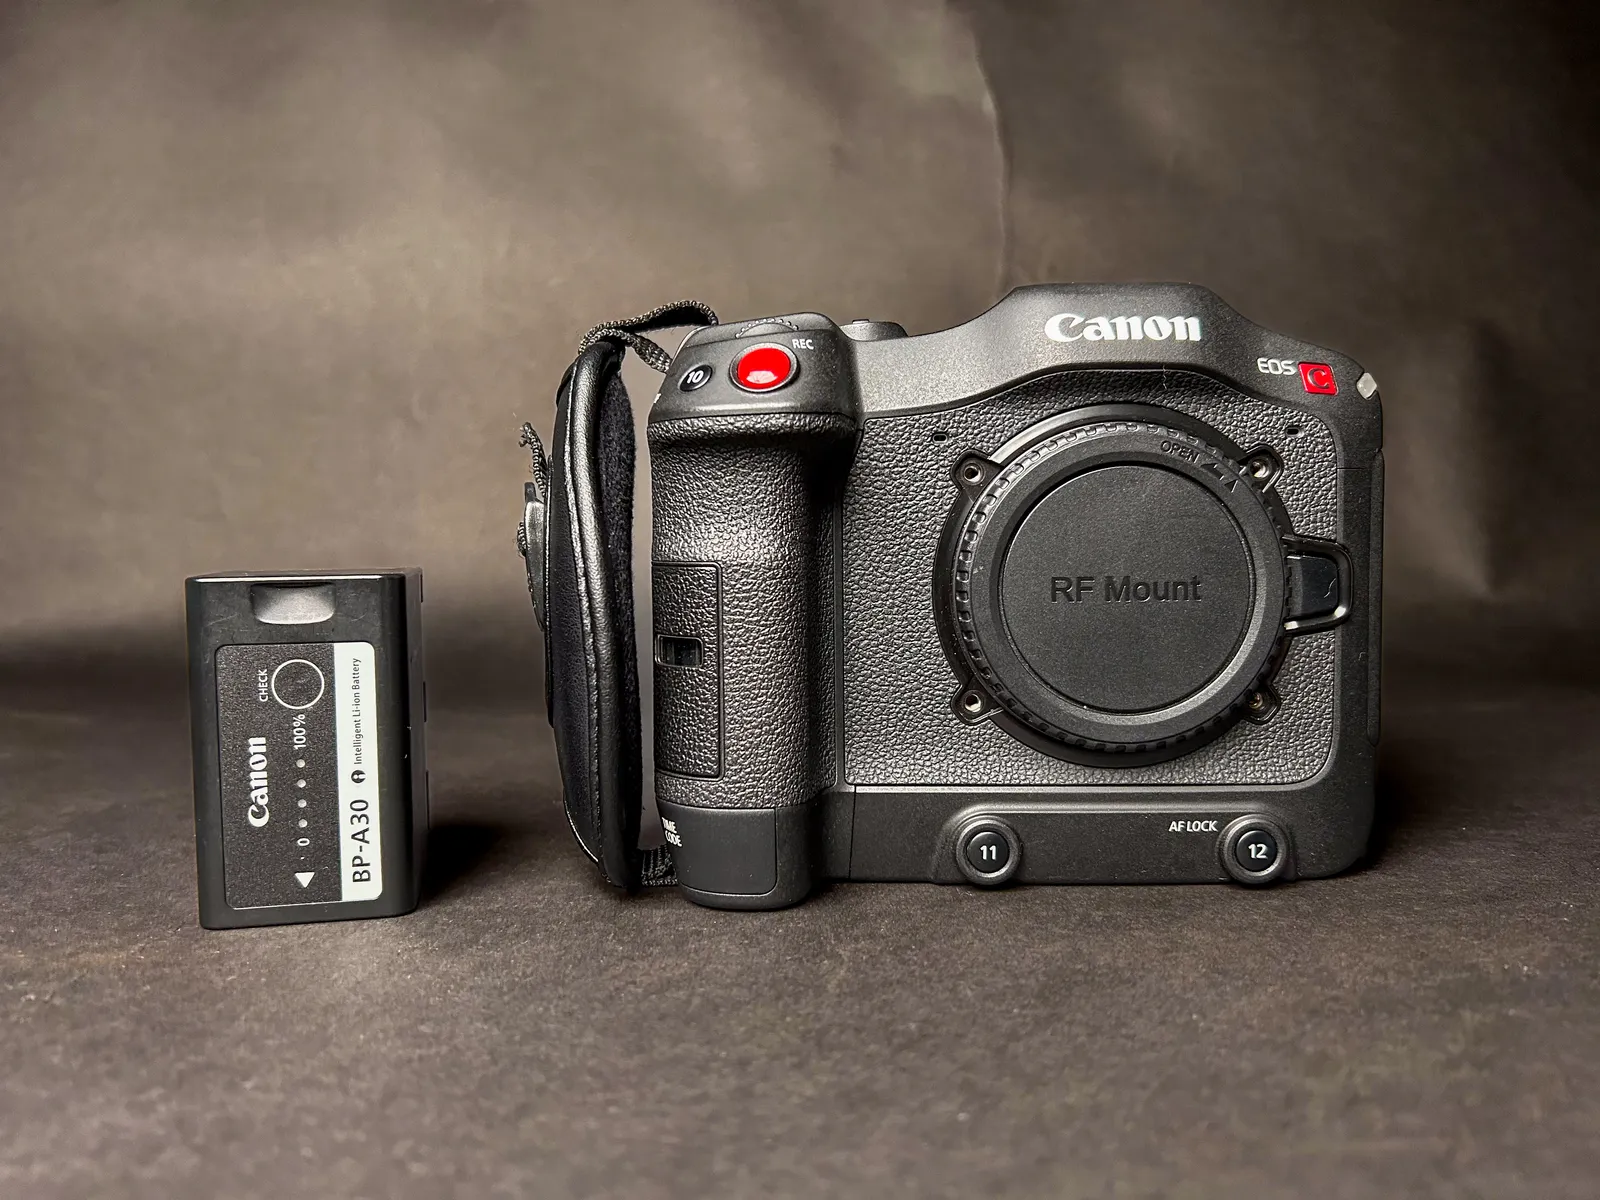 Canon C70 Cinema Camera